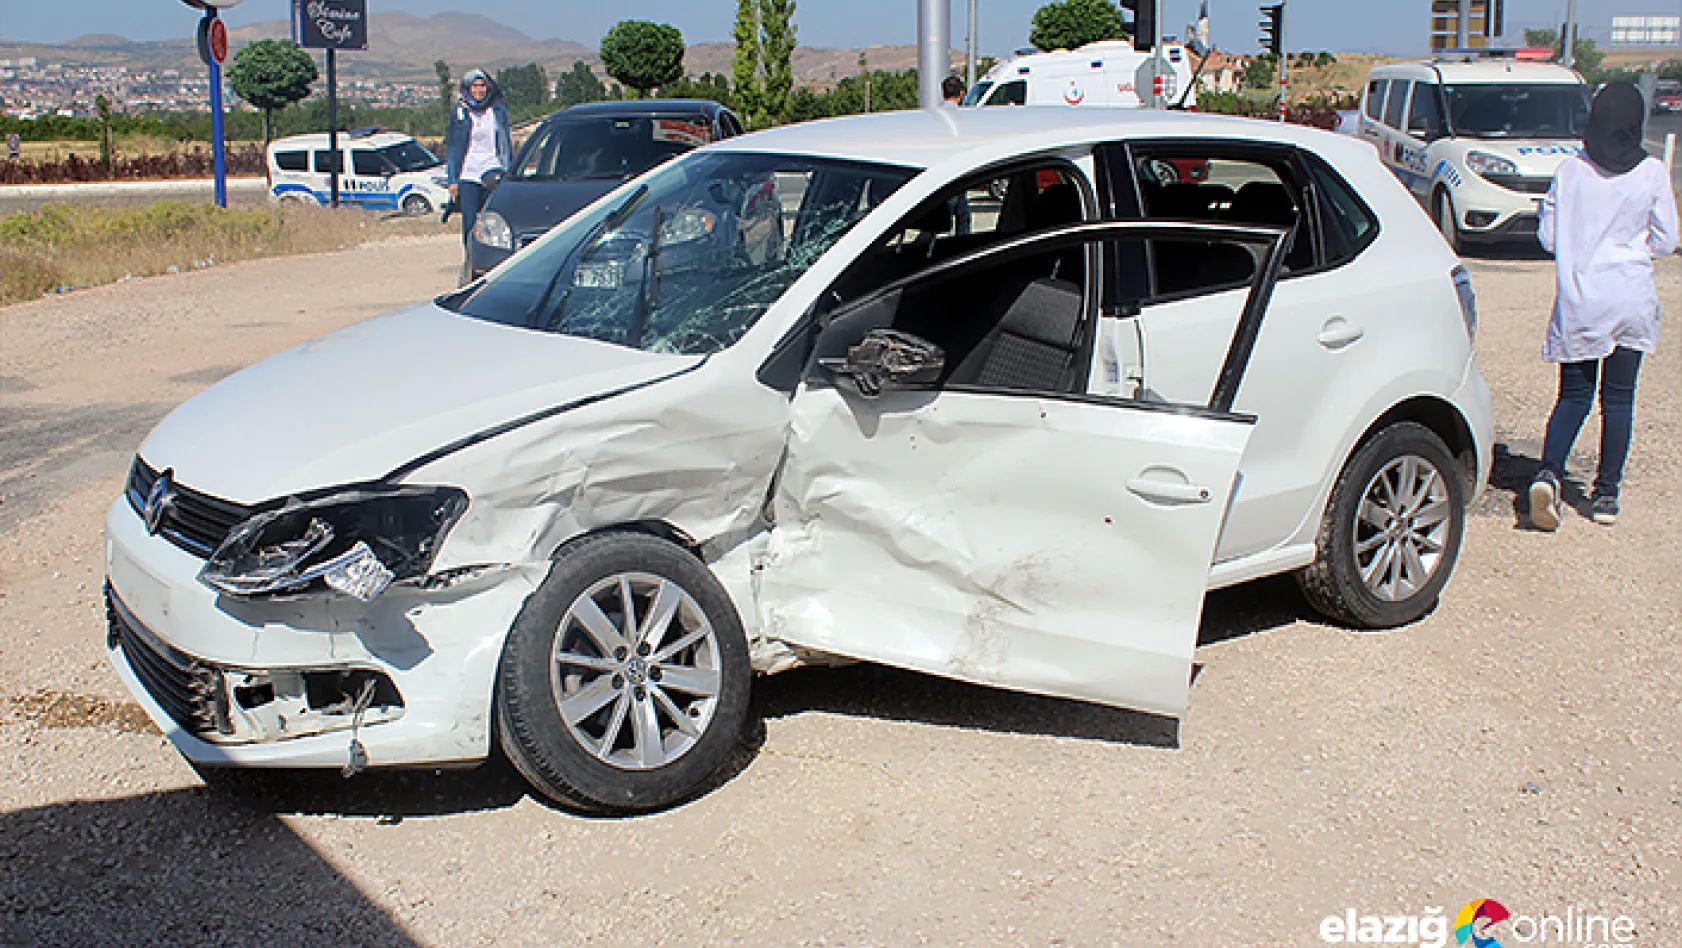 Elazığ'da trafik kazası: 4'ü çocuk 10 yaralı